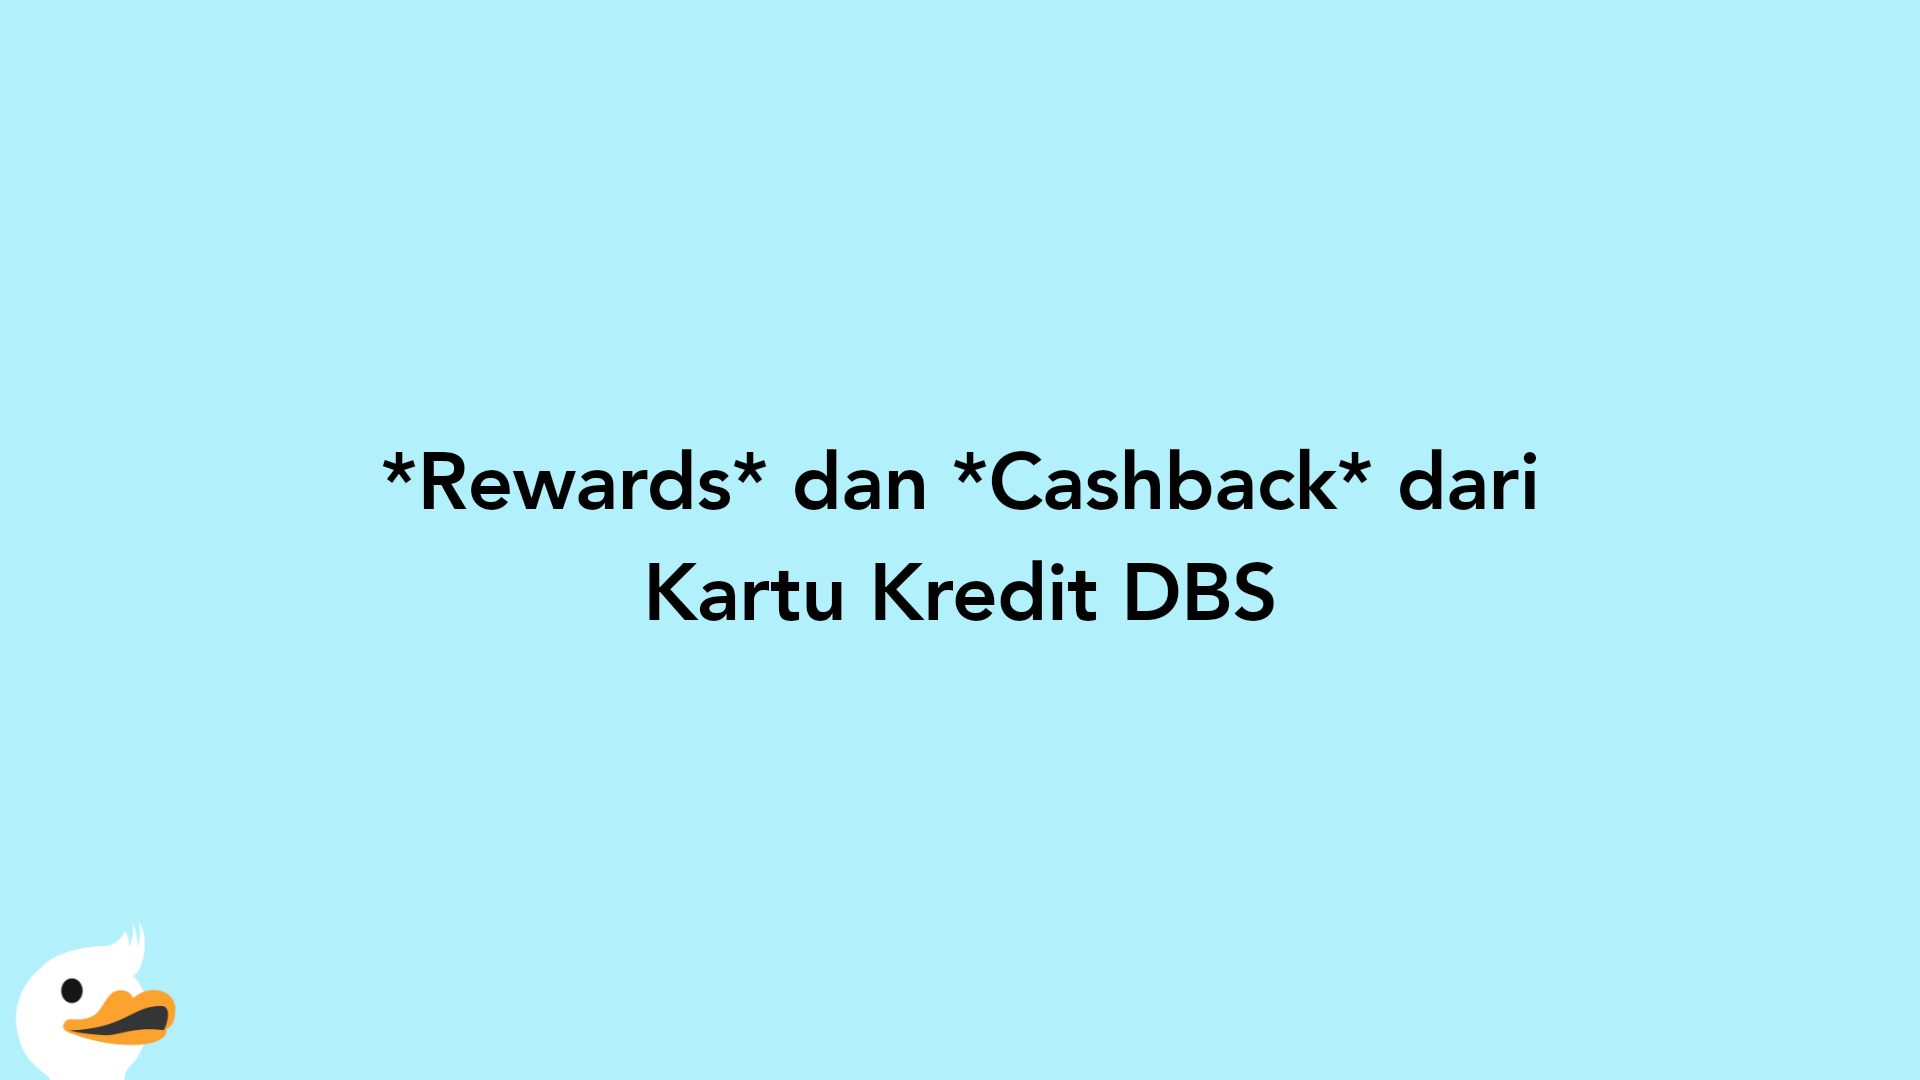 Rewards dan Cashback dari Kartu Kredit DBS